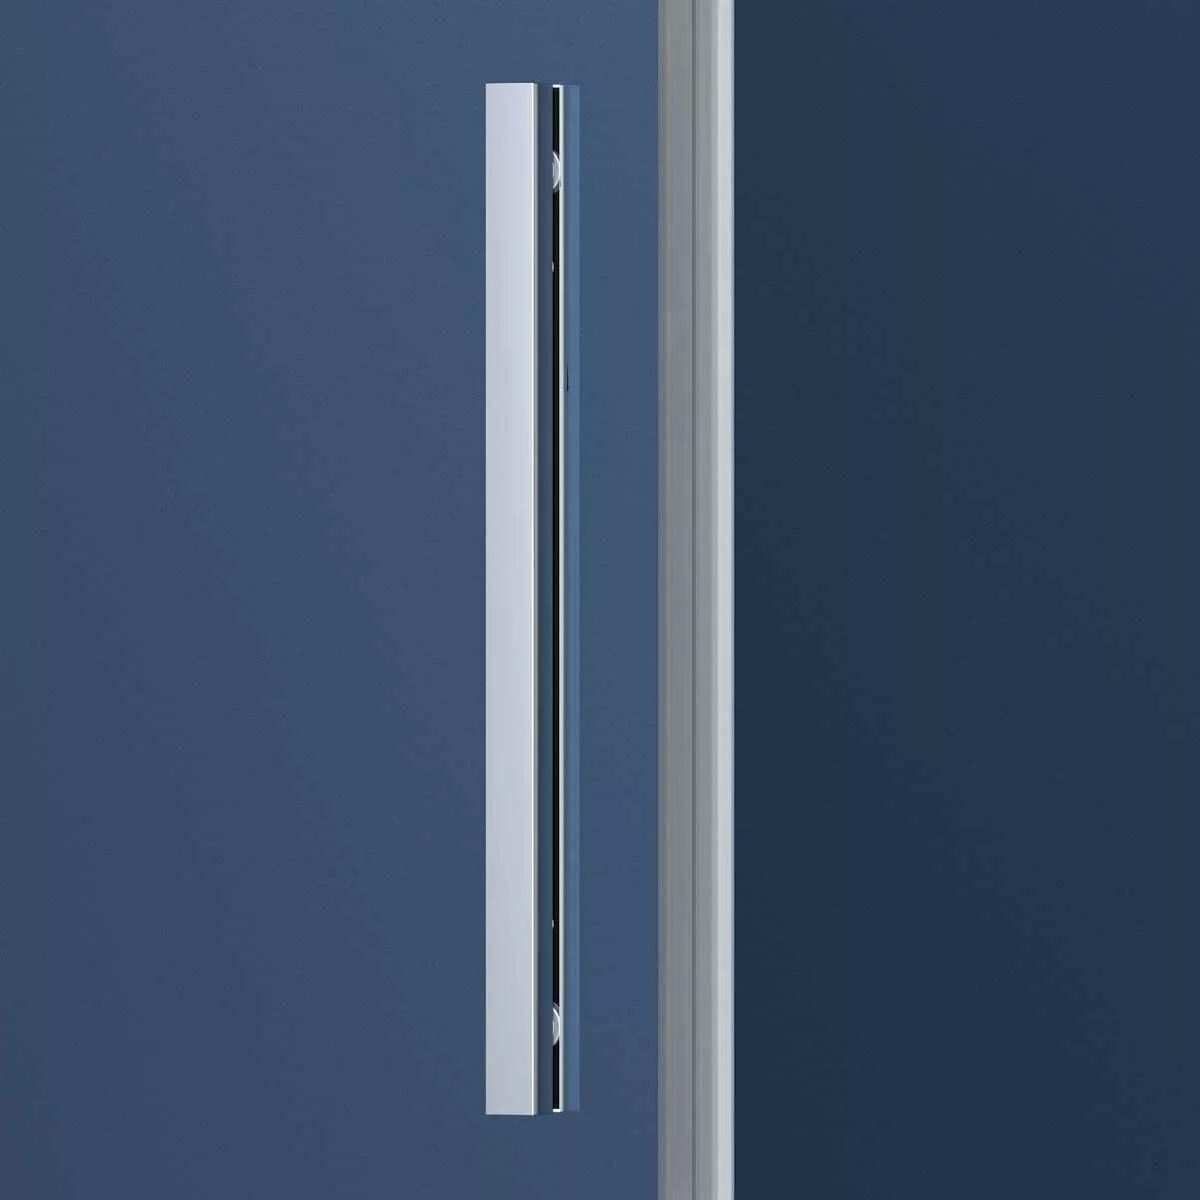 фото Душевая дверь Vincea Soft VDS-3SO110CL, профиль хром, стекло прозрачное 